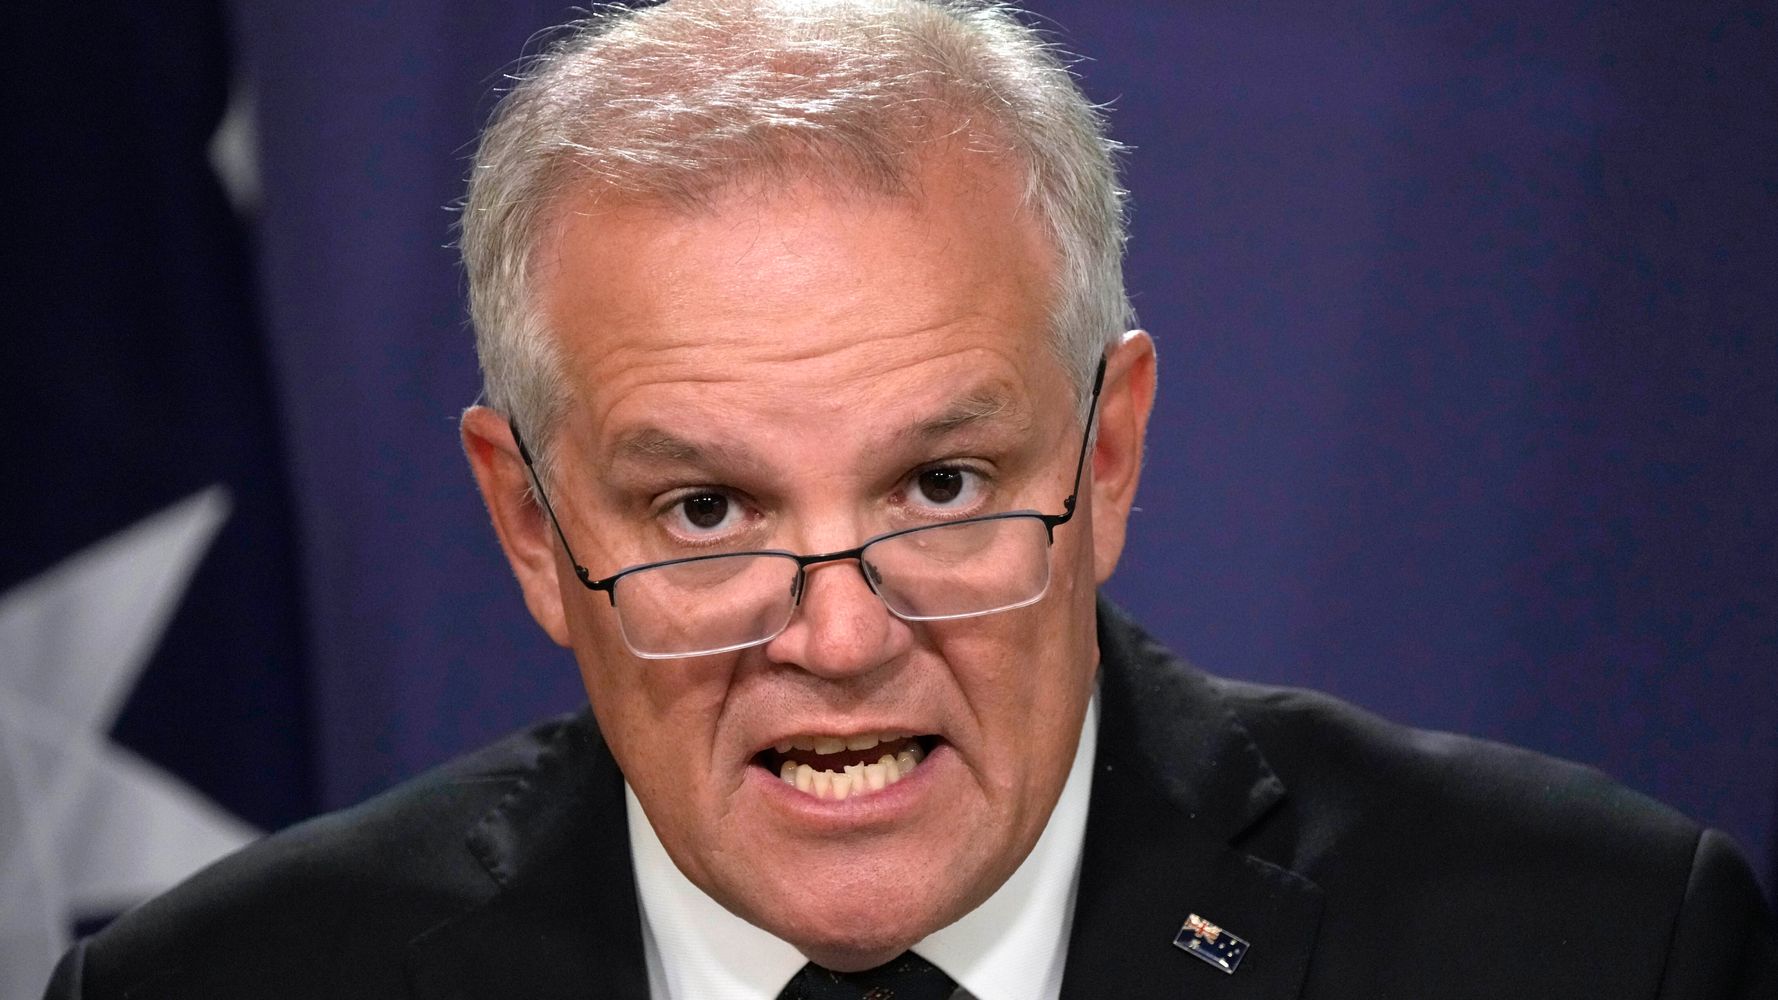 Le Premier ministre australien concède sa défaite électorale, mettant fin à une décennie de régime conservateur